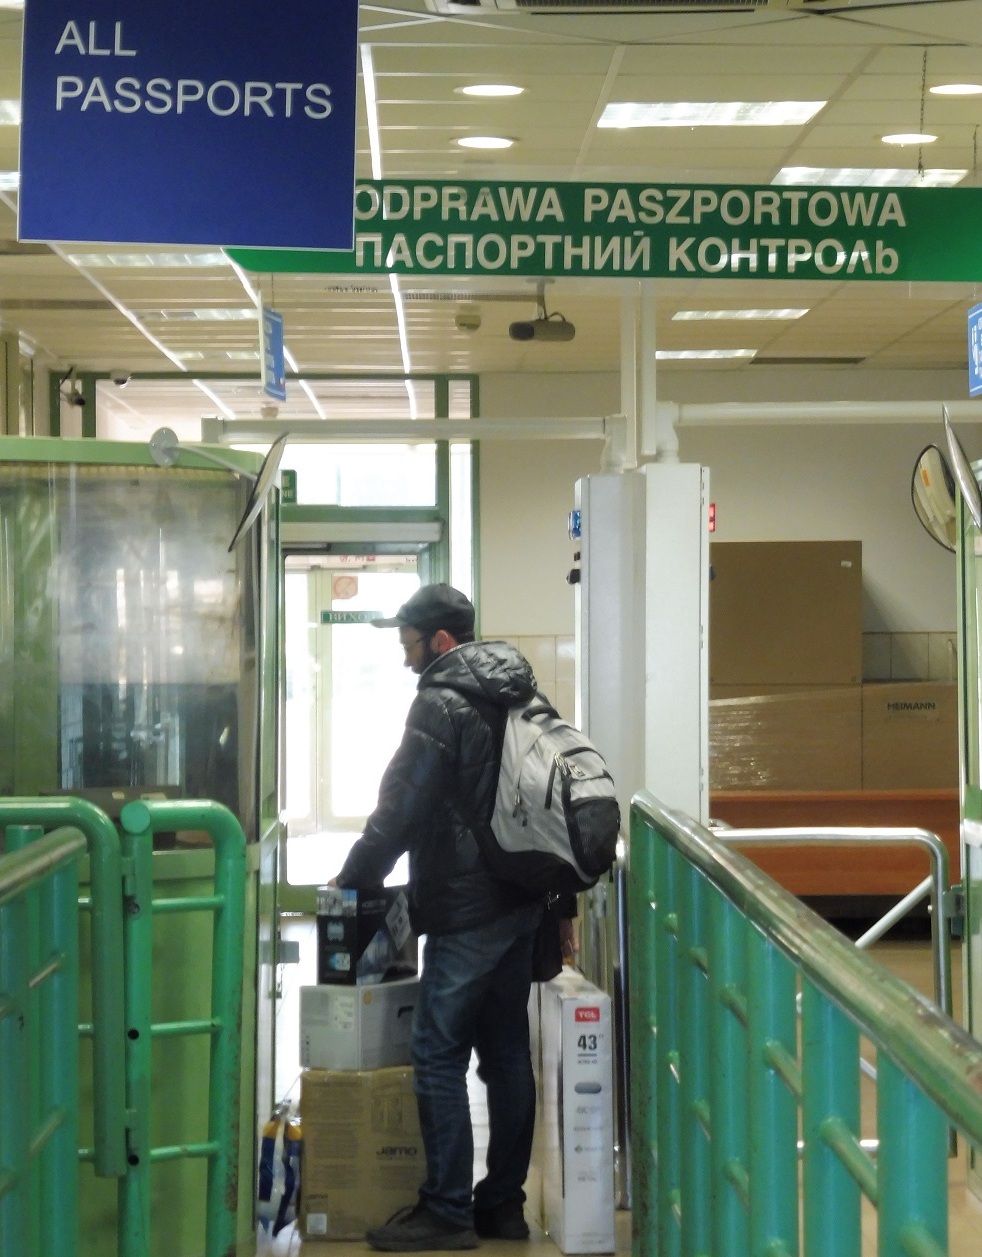 Obywatel Ukrainy chciał przenieść przez przejście graniczne drzwi i pokrywę bagażnika kradzionego samochodu - Zdjęcie główne